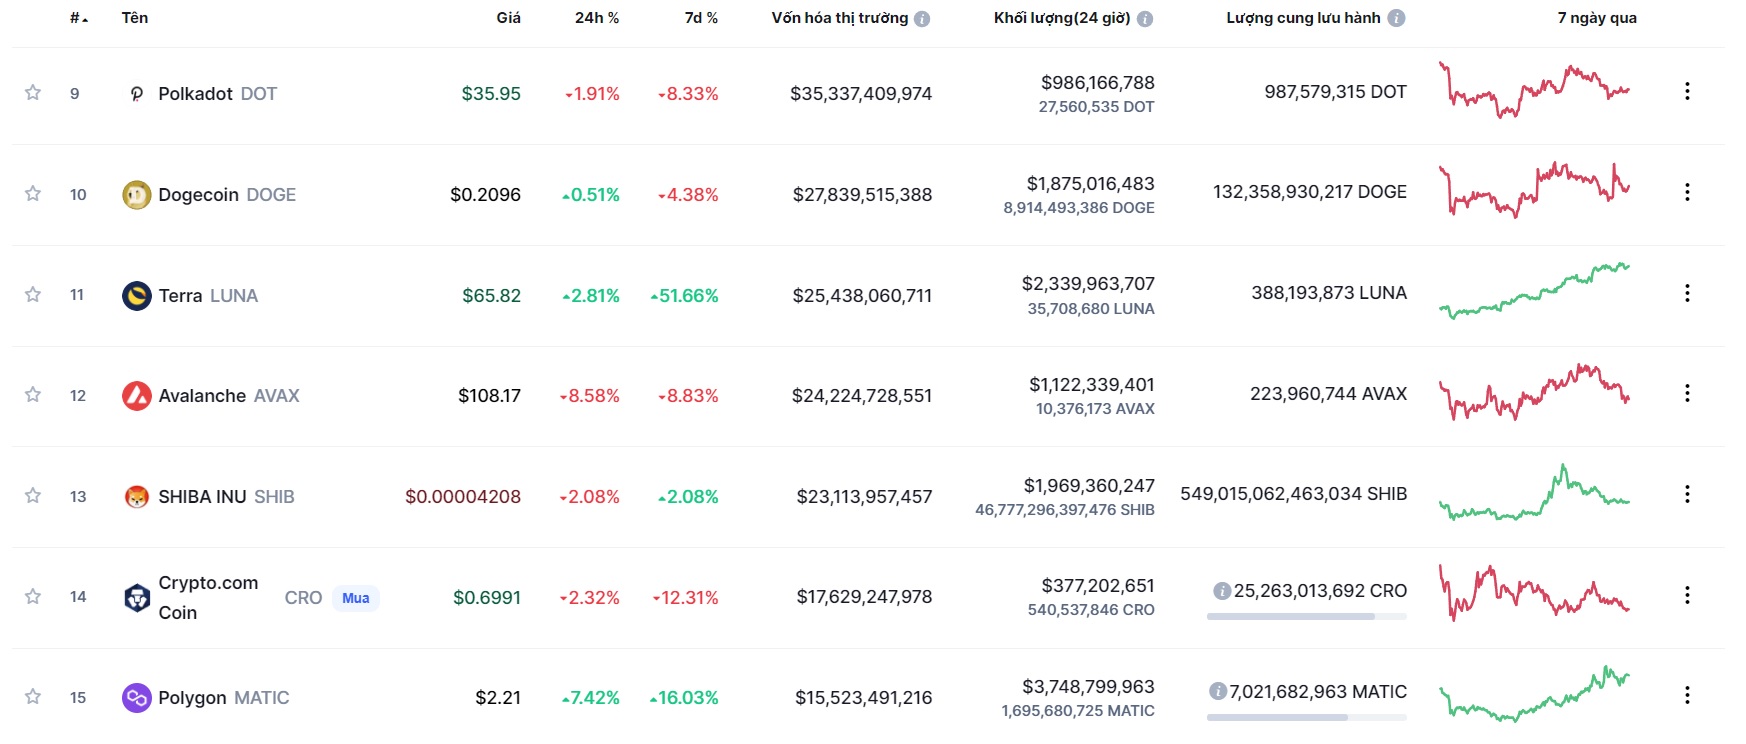 Giá Bitcoin hôm nay 3/12: Màu đỏ chiếm phần lớn - Ảnh 1